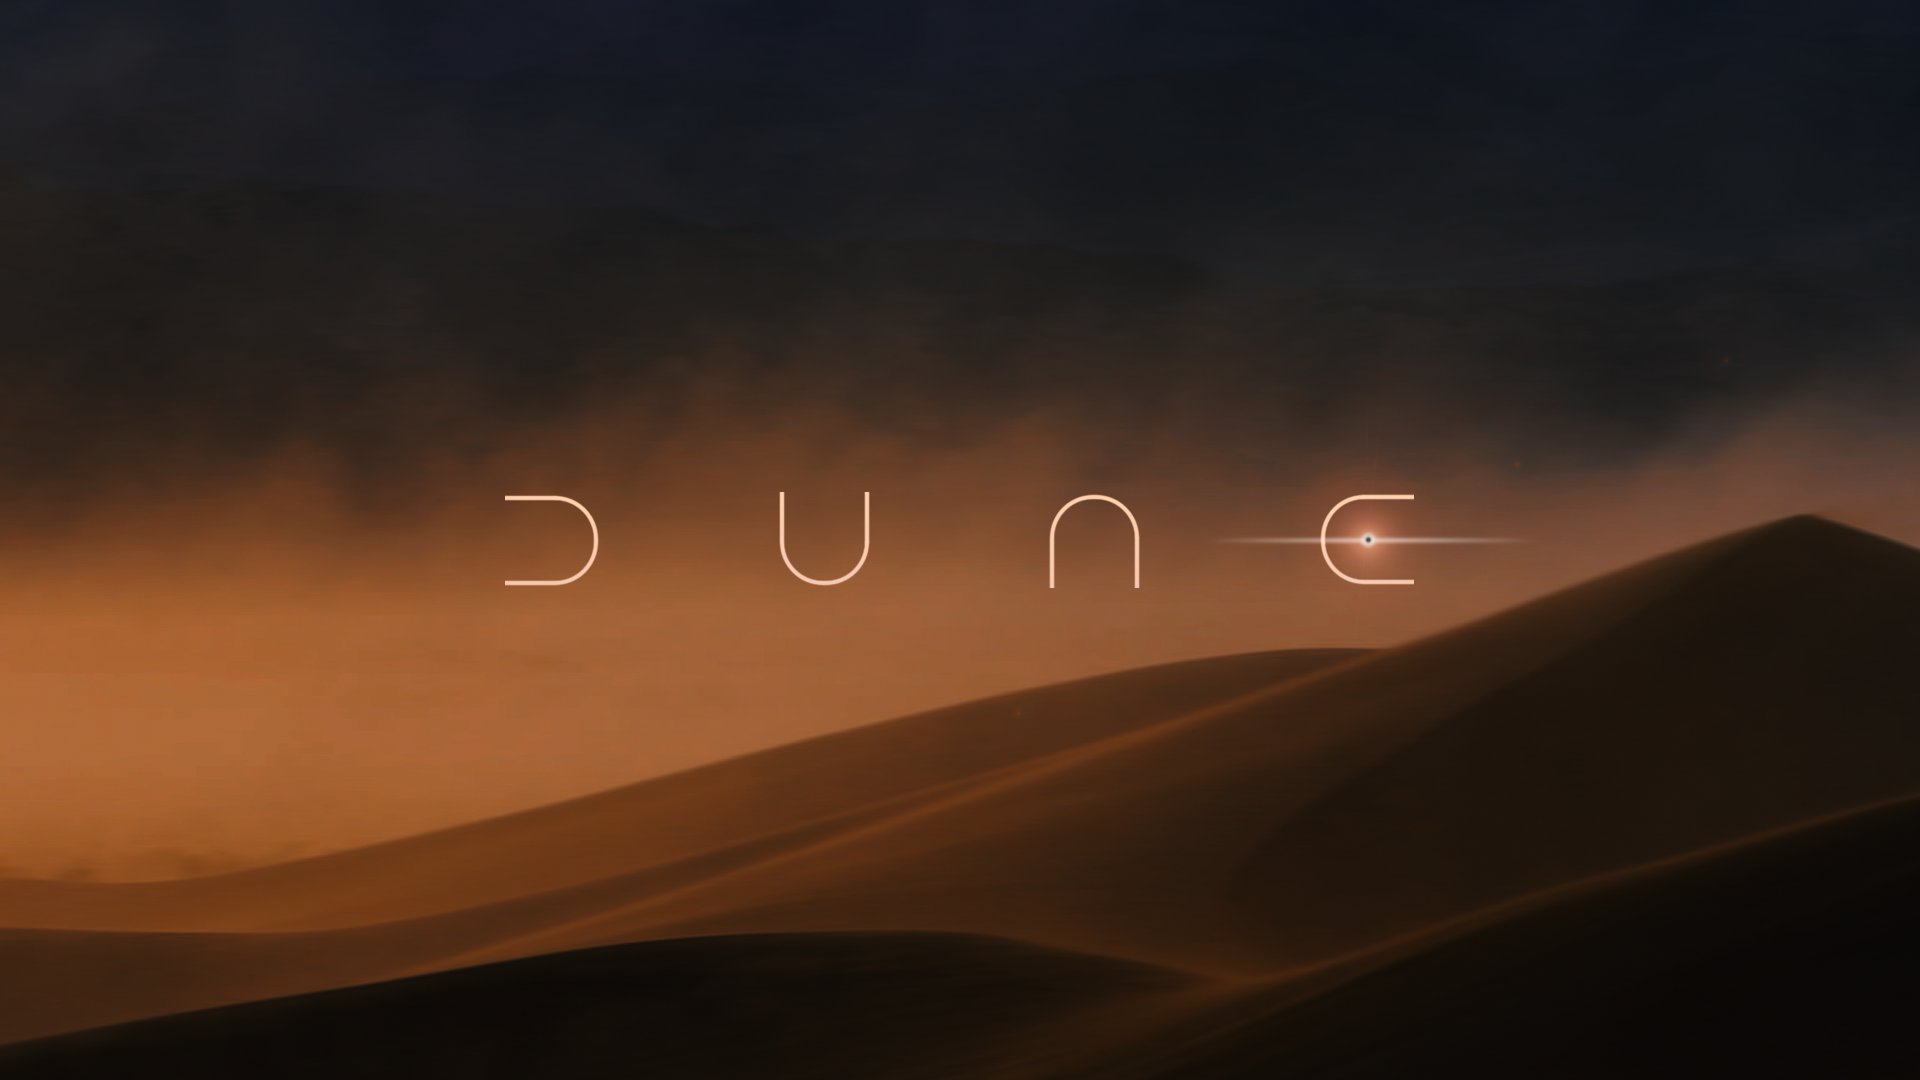 Dune series